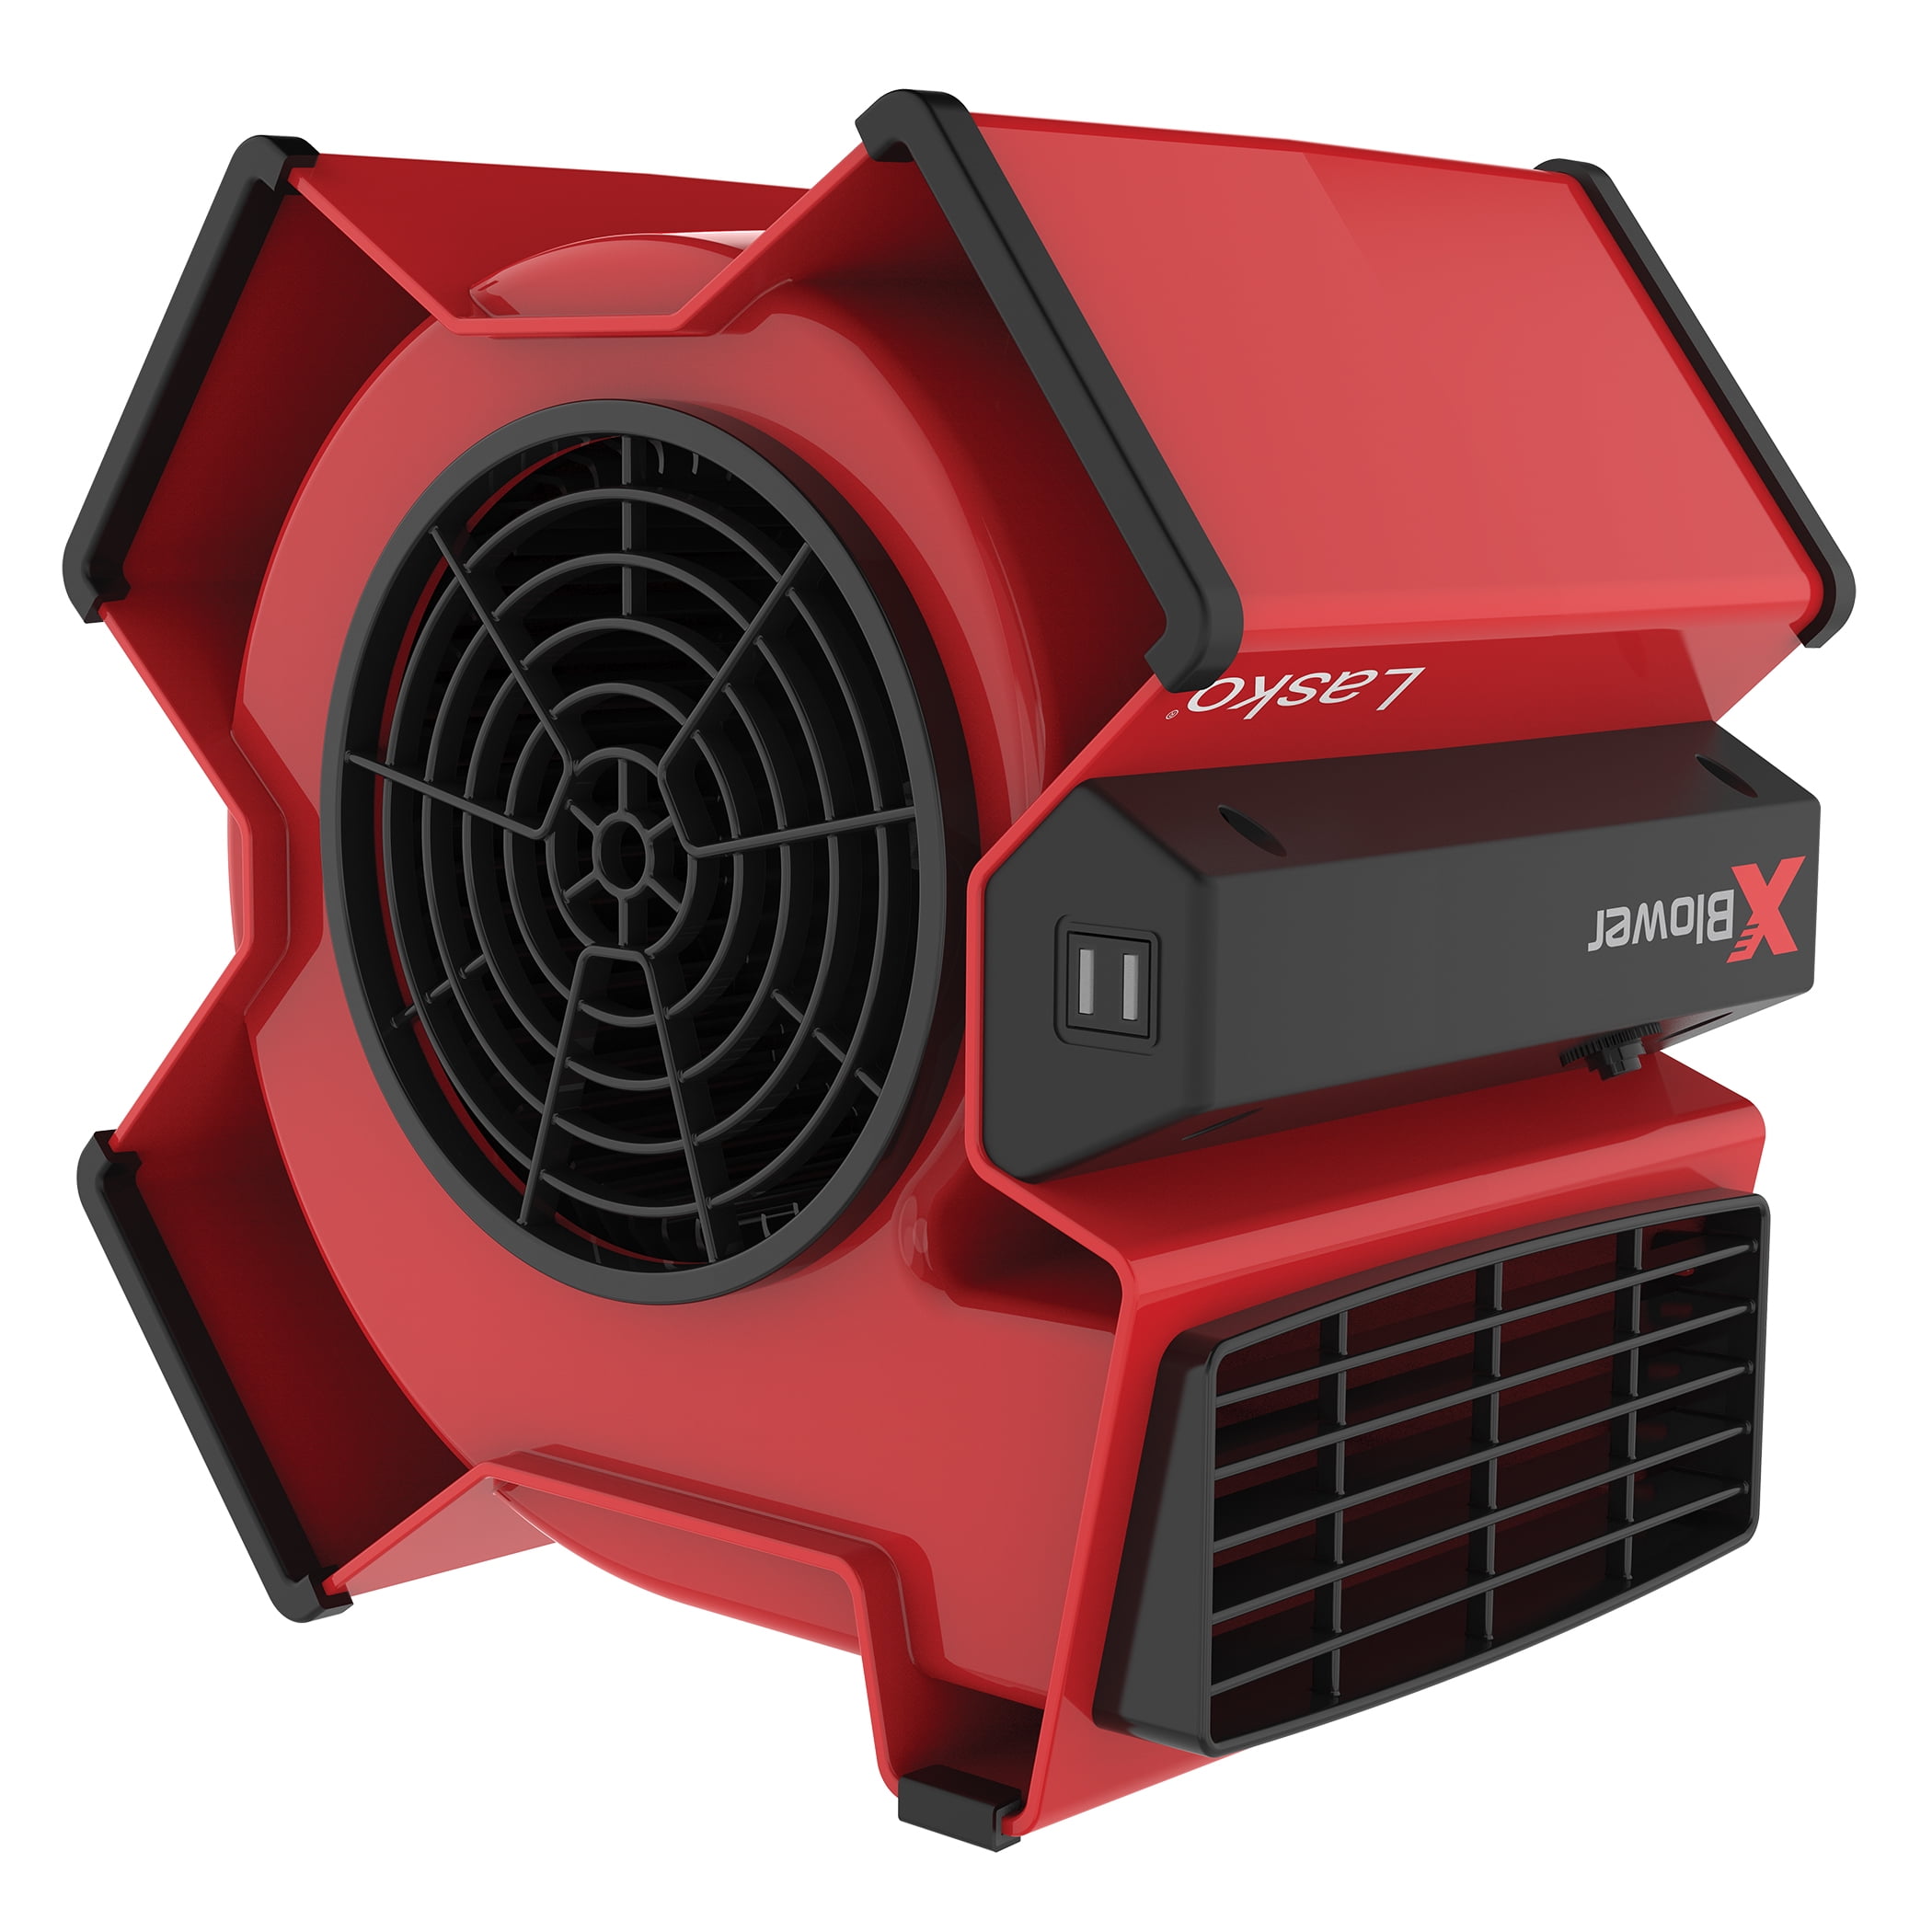 suffix ortodoks Perioperativ periode Lasko X-Blower Multi-Position Utility Blower Fan with USB Port, X12900, Red  - Walmart.com